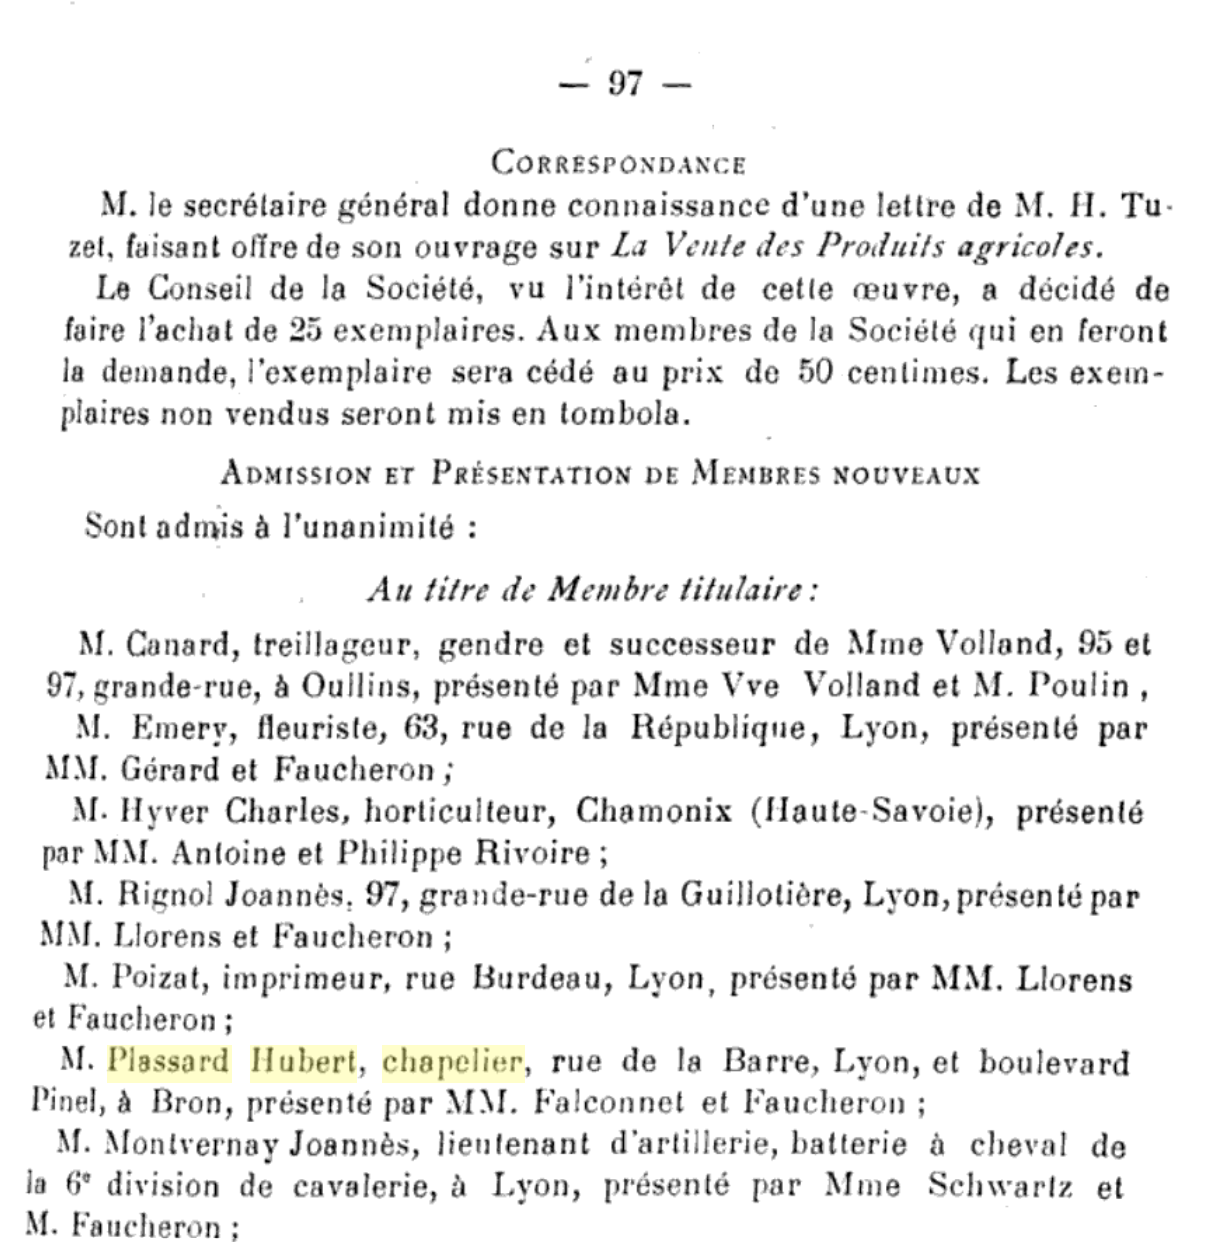 H.Plassard_1910_L'Horticulture nouvelle, revue bi-mensuelle des parcs et jardins.png